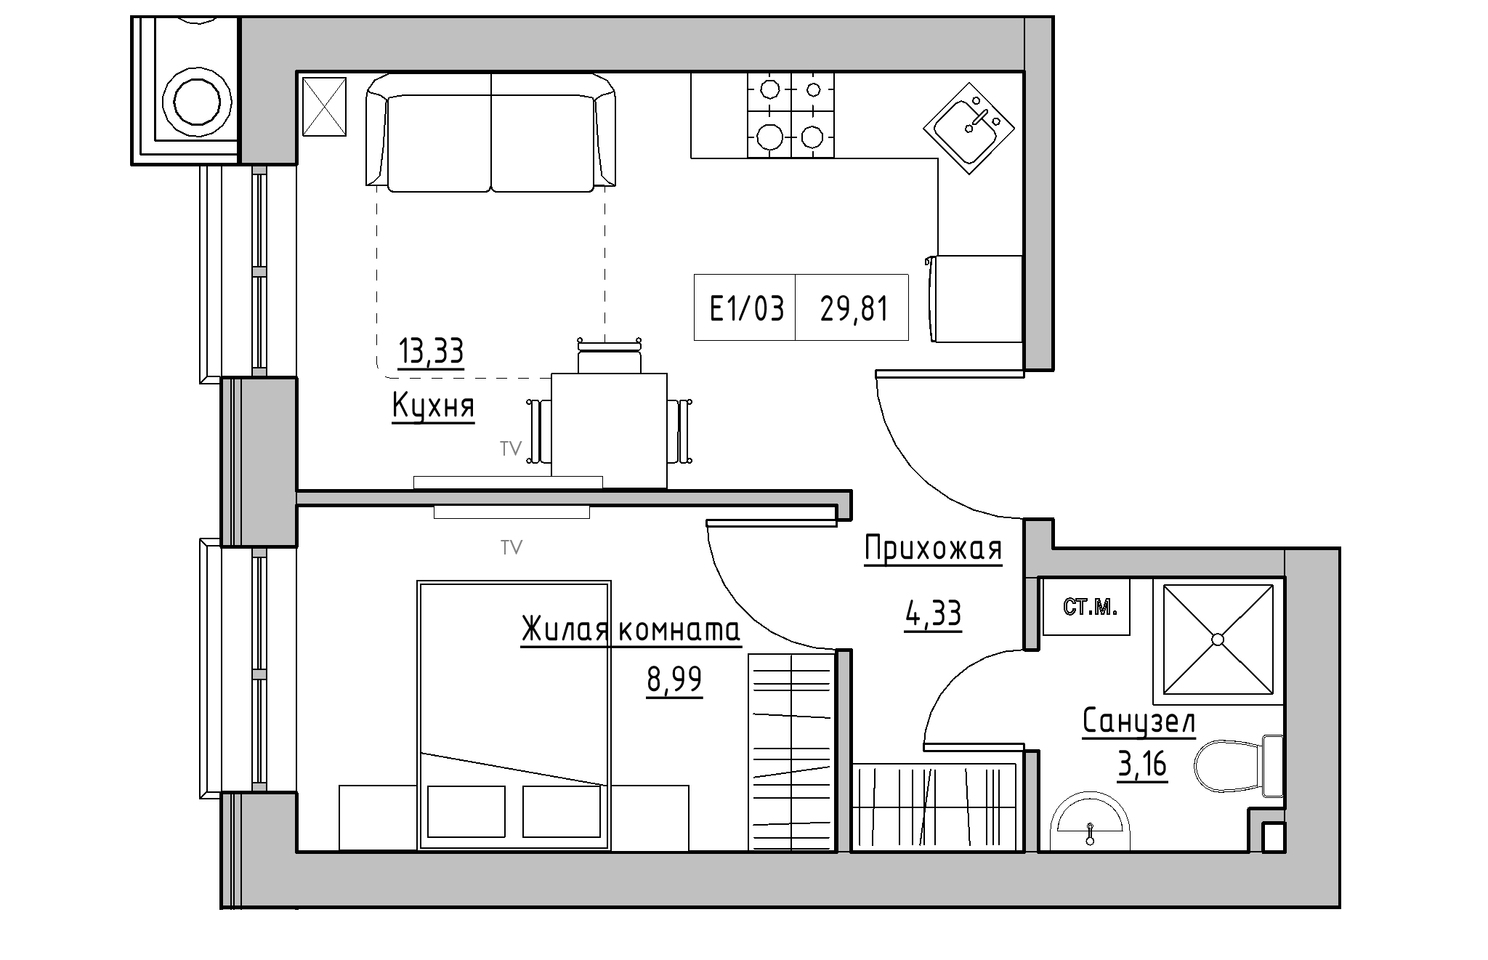 Планування 1-к квартира площею 29.81м2, KS-010-01/0012.